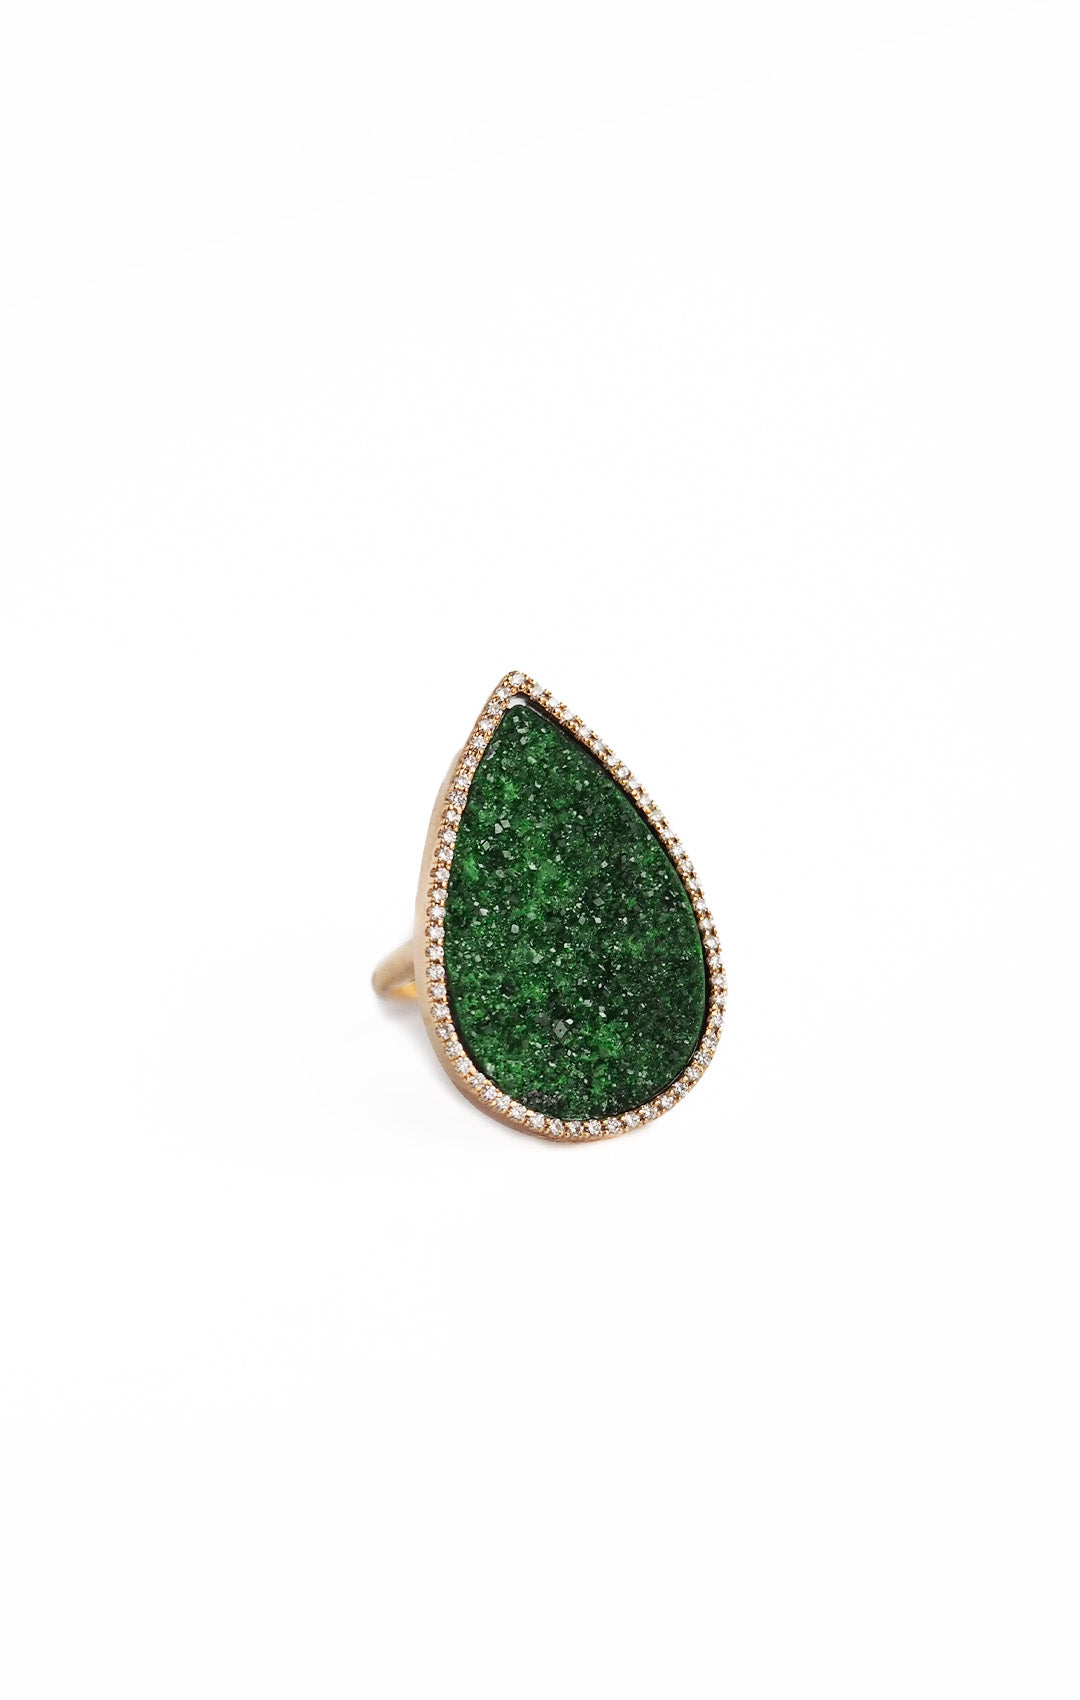 AYALA ring, green